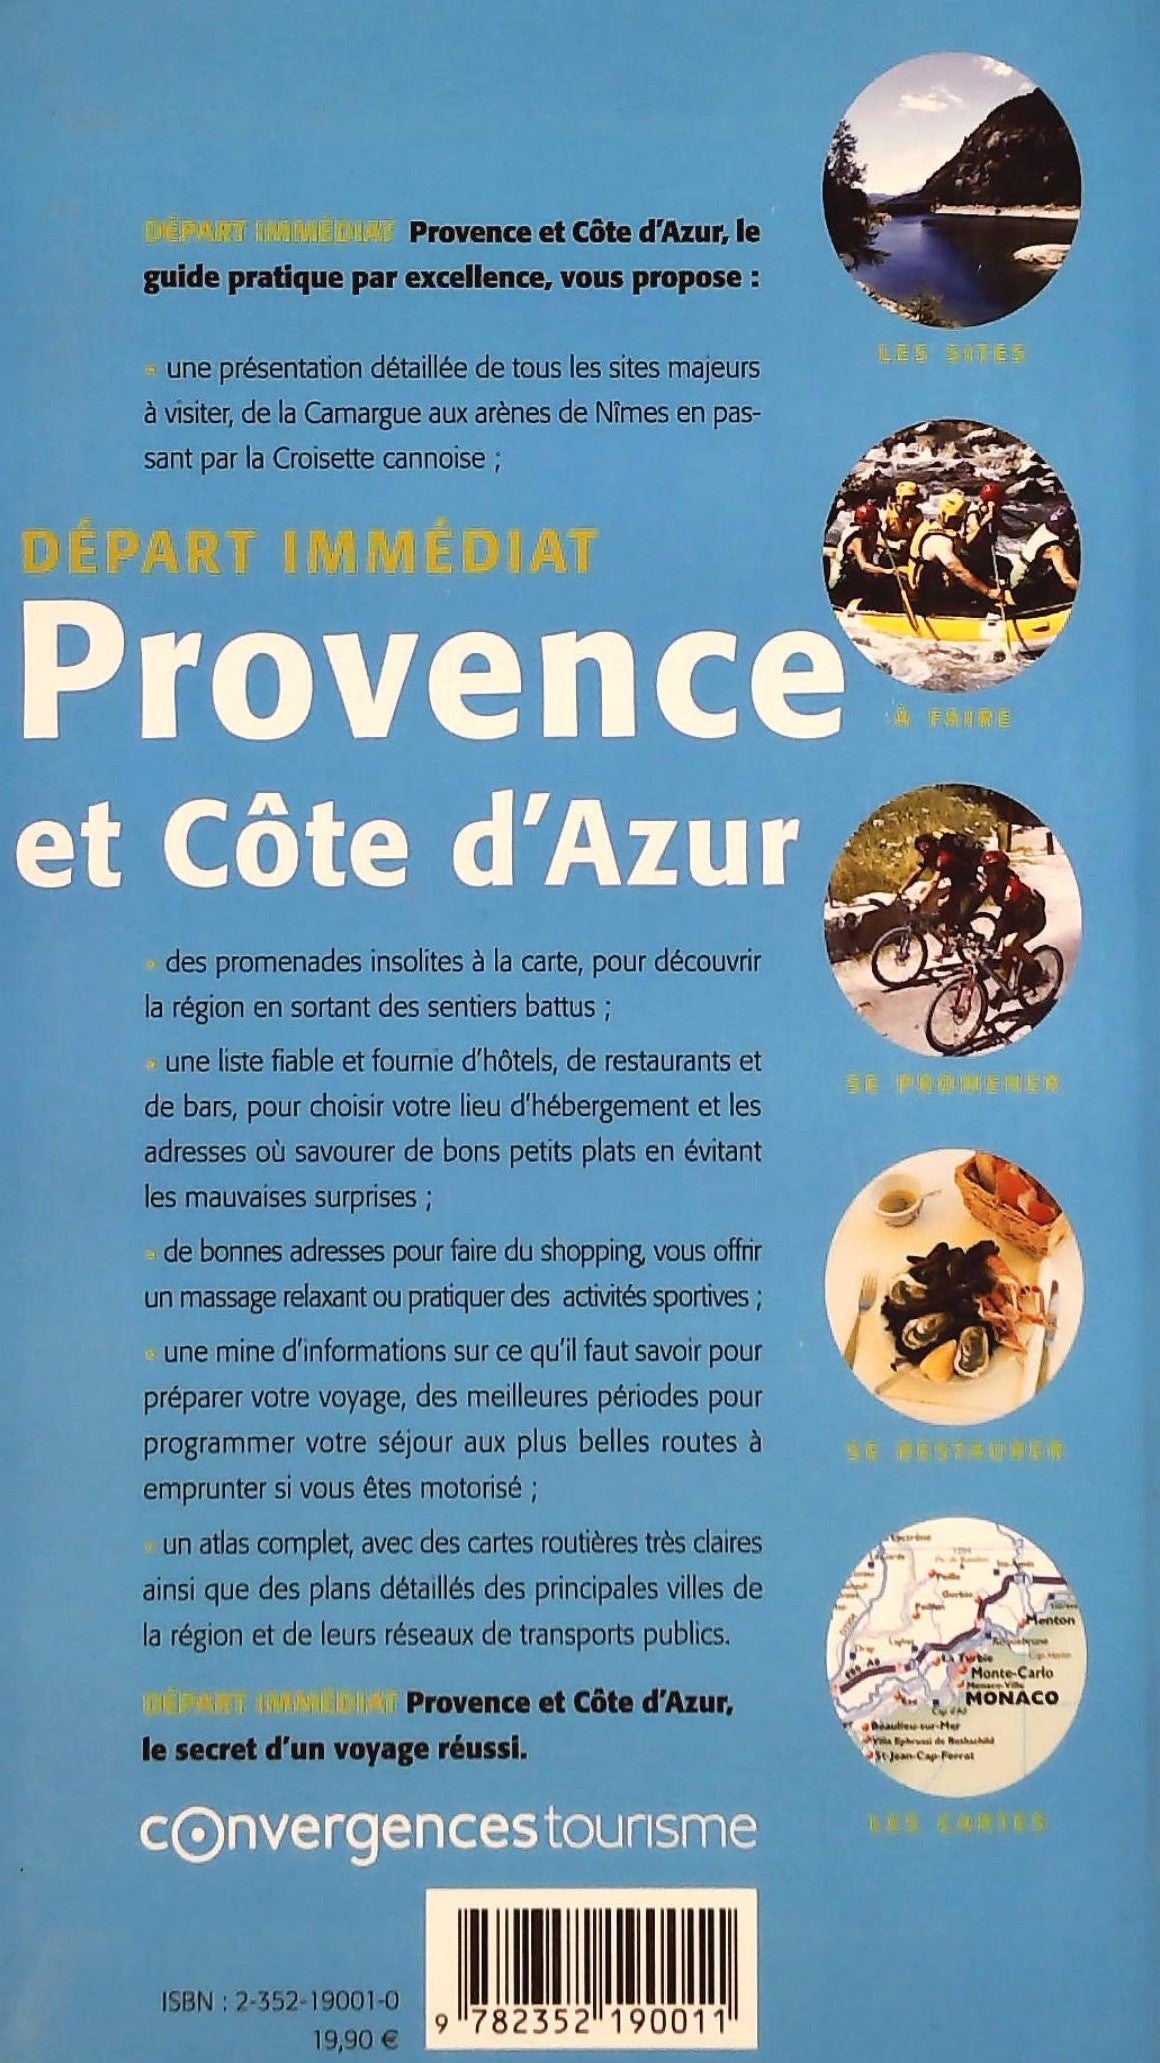 Départ immédiat : Provence et Côte d'Azur